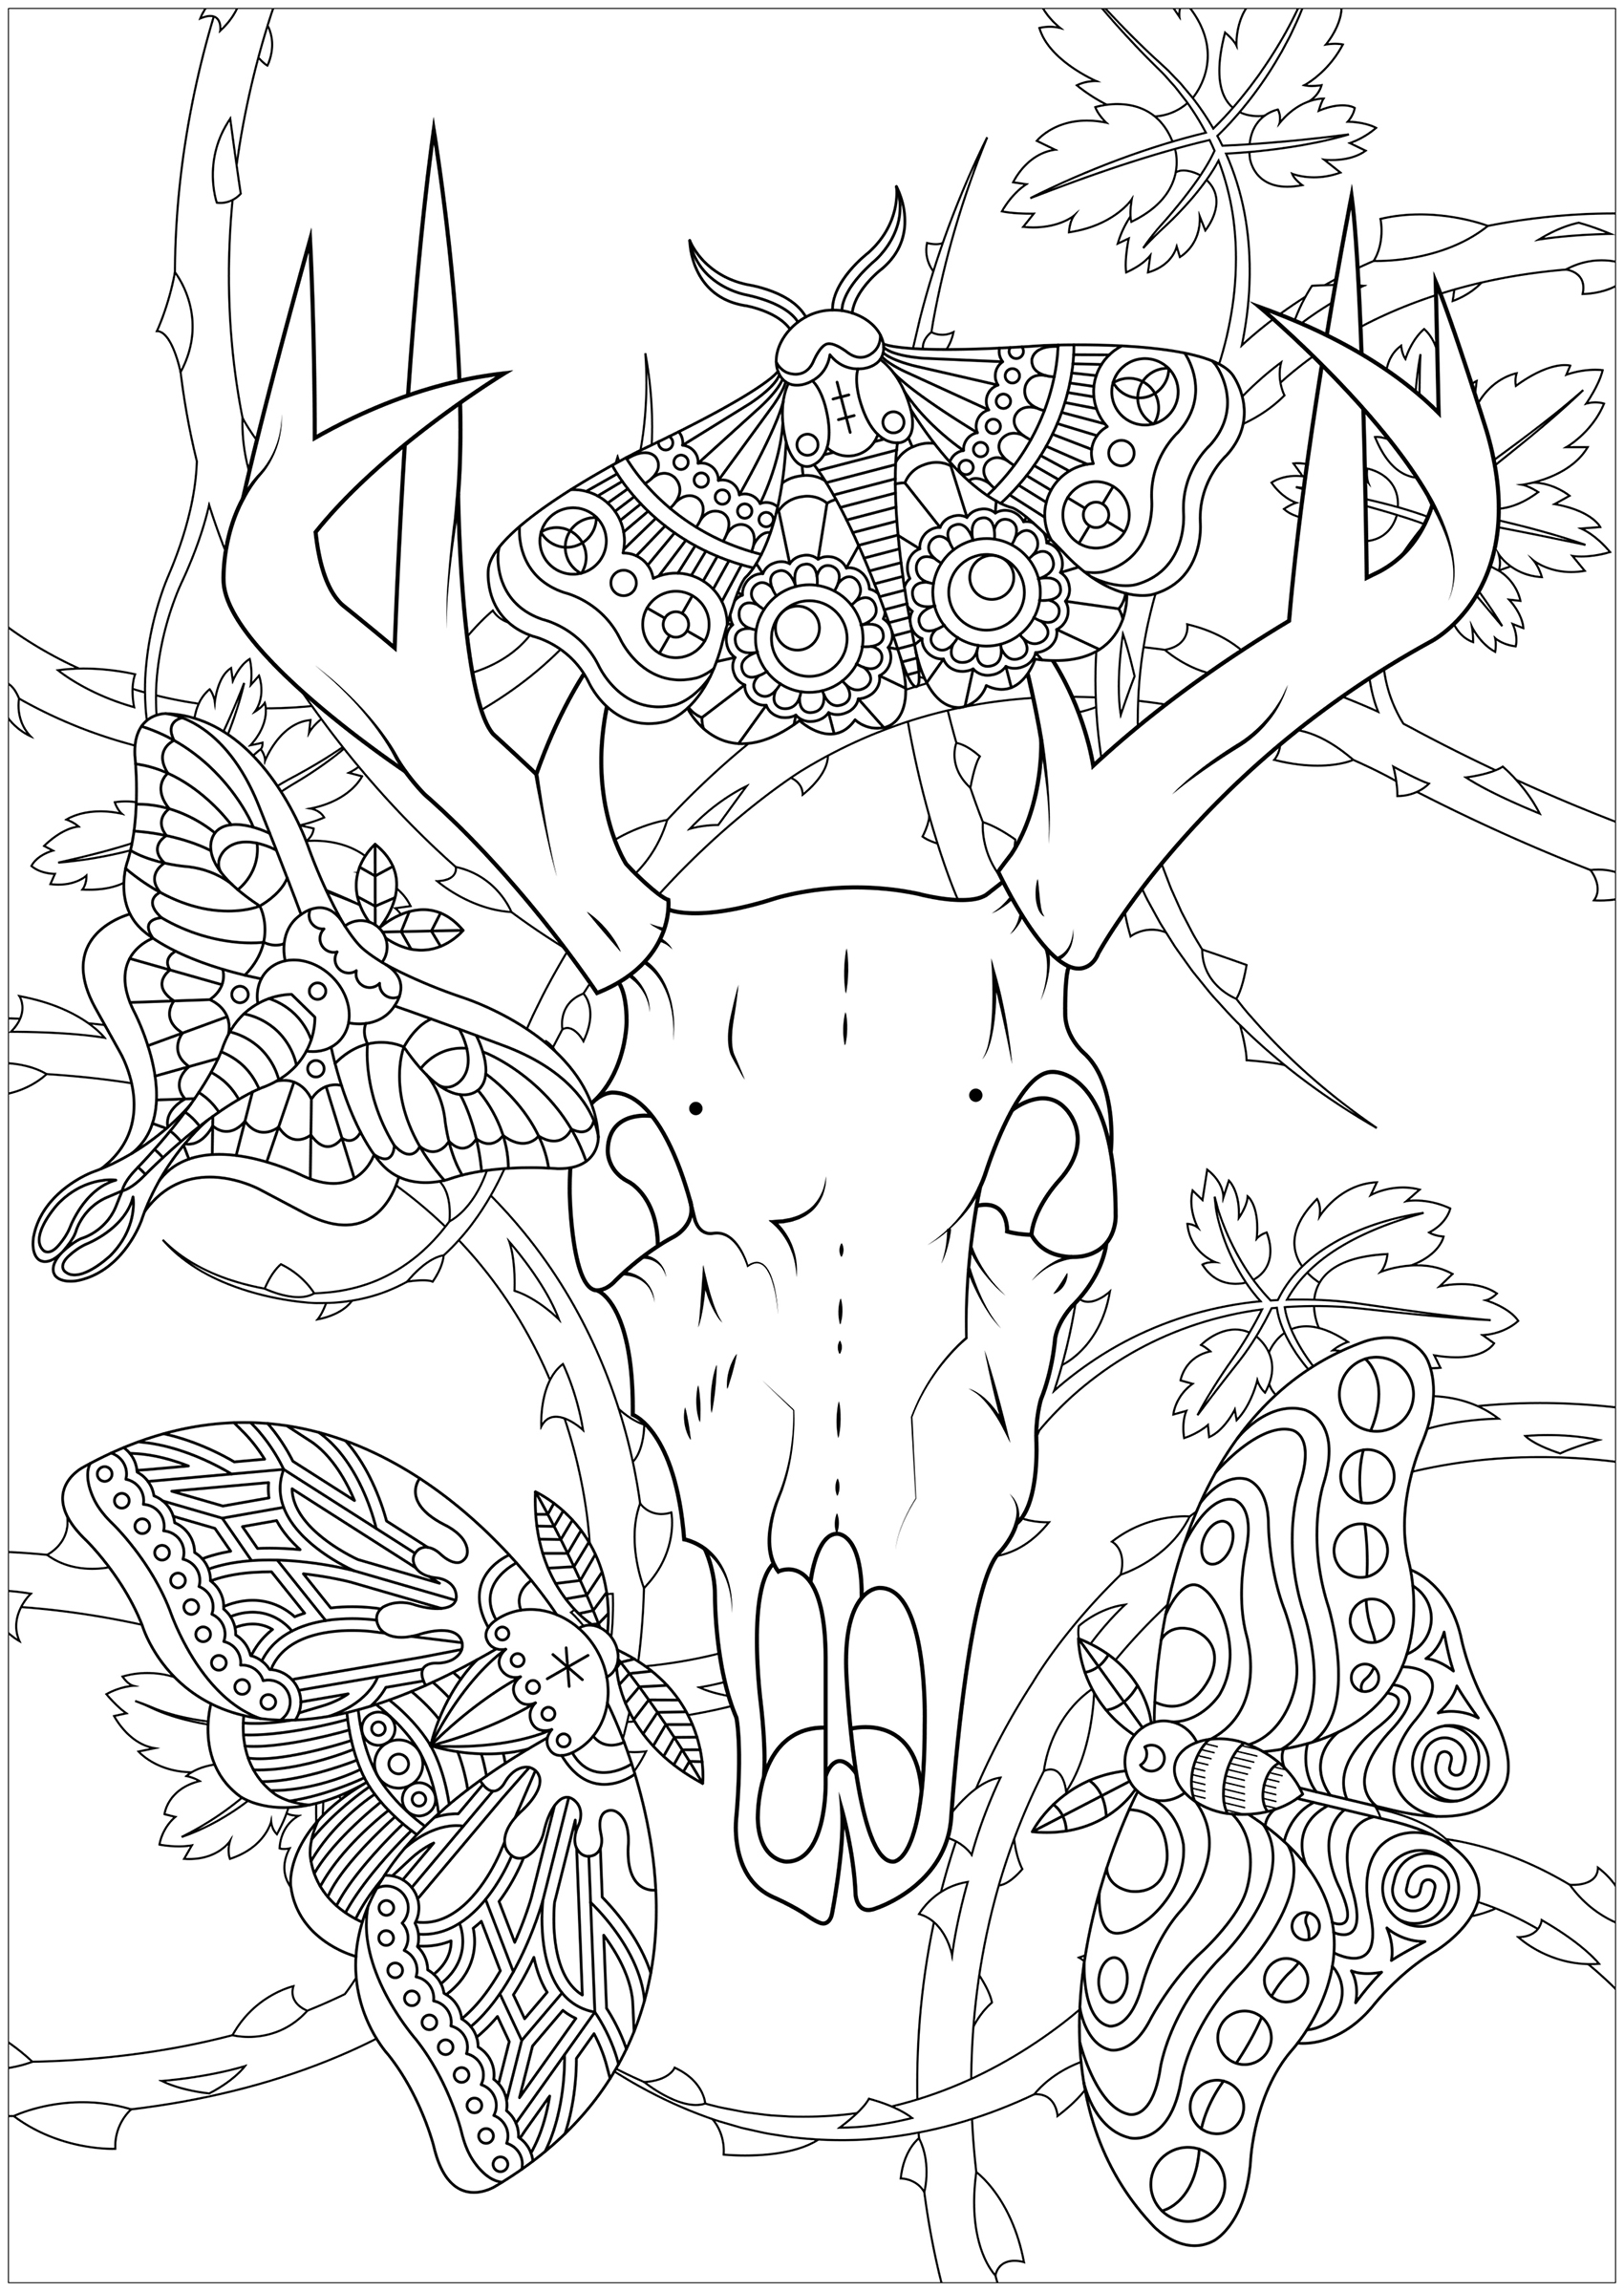 Vier Motten und ein Hirschschädel, mit Brombeeren im Hintergrund ... Eine düstere und faszinierende Malvorlage